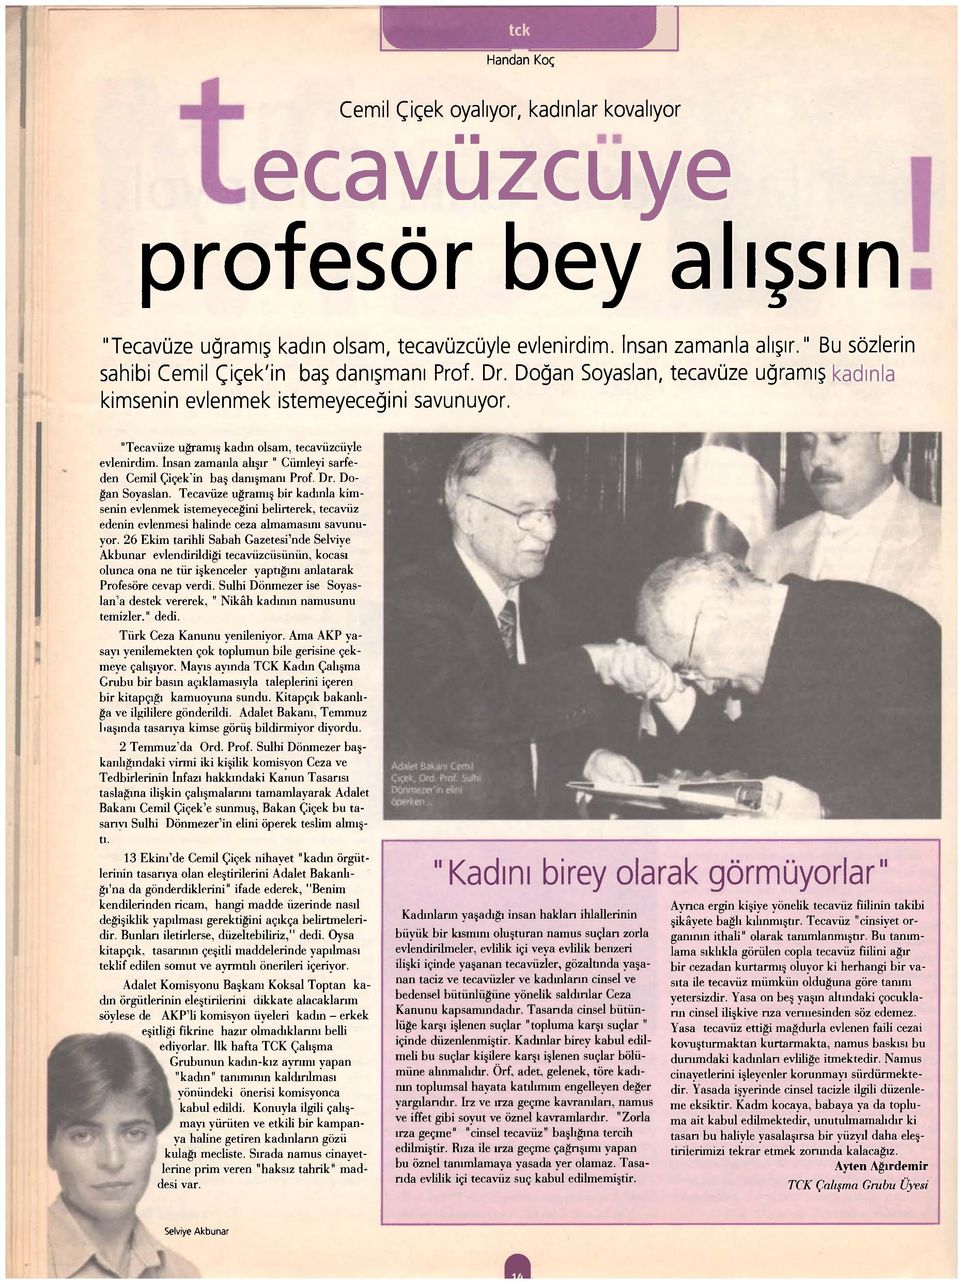 İnsan zamanla alışır " Cümleyi sarfeden Cemil Çiçek'in baş danışmanı Prof. Dr. Doğan Soyaslan.